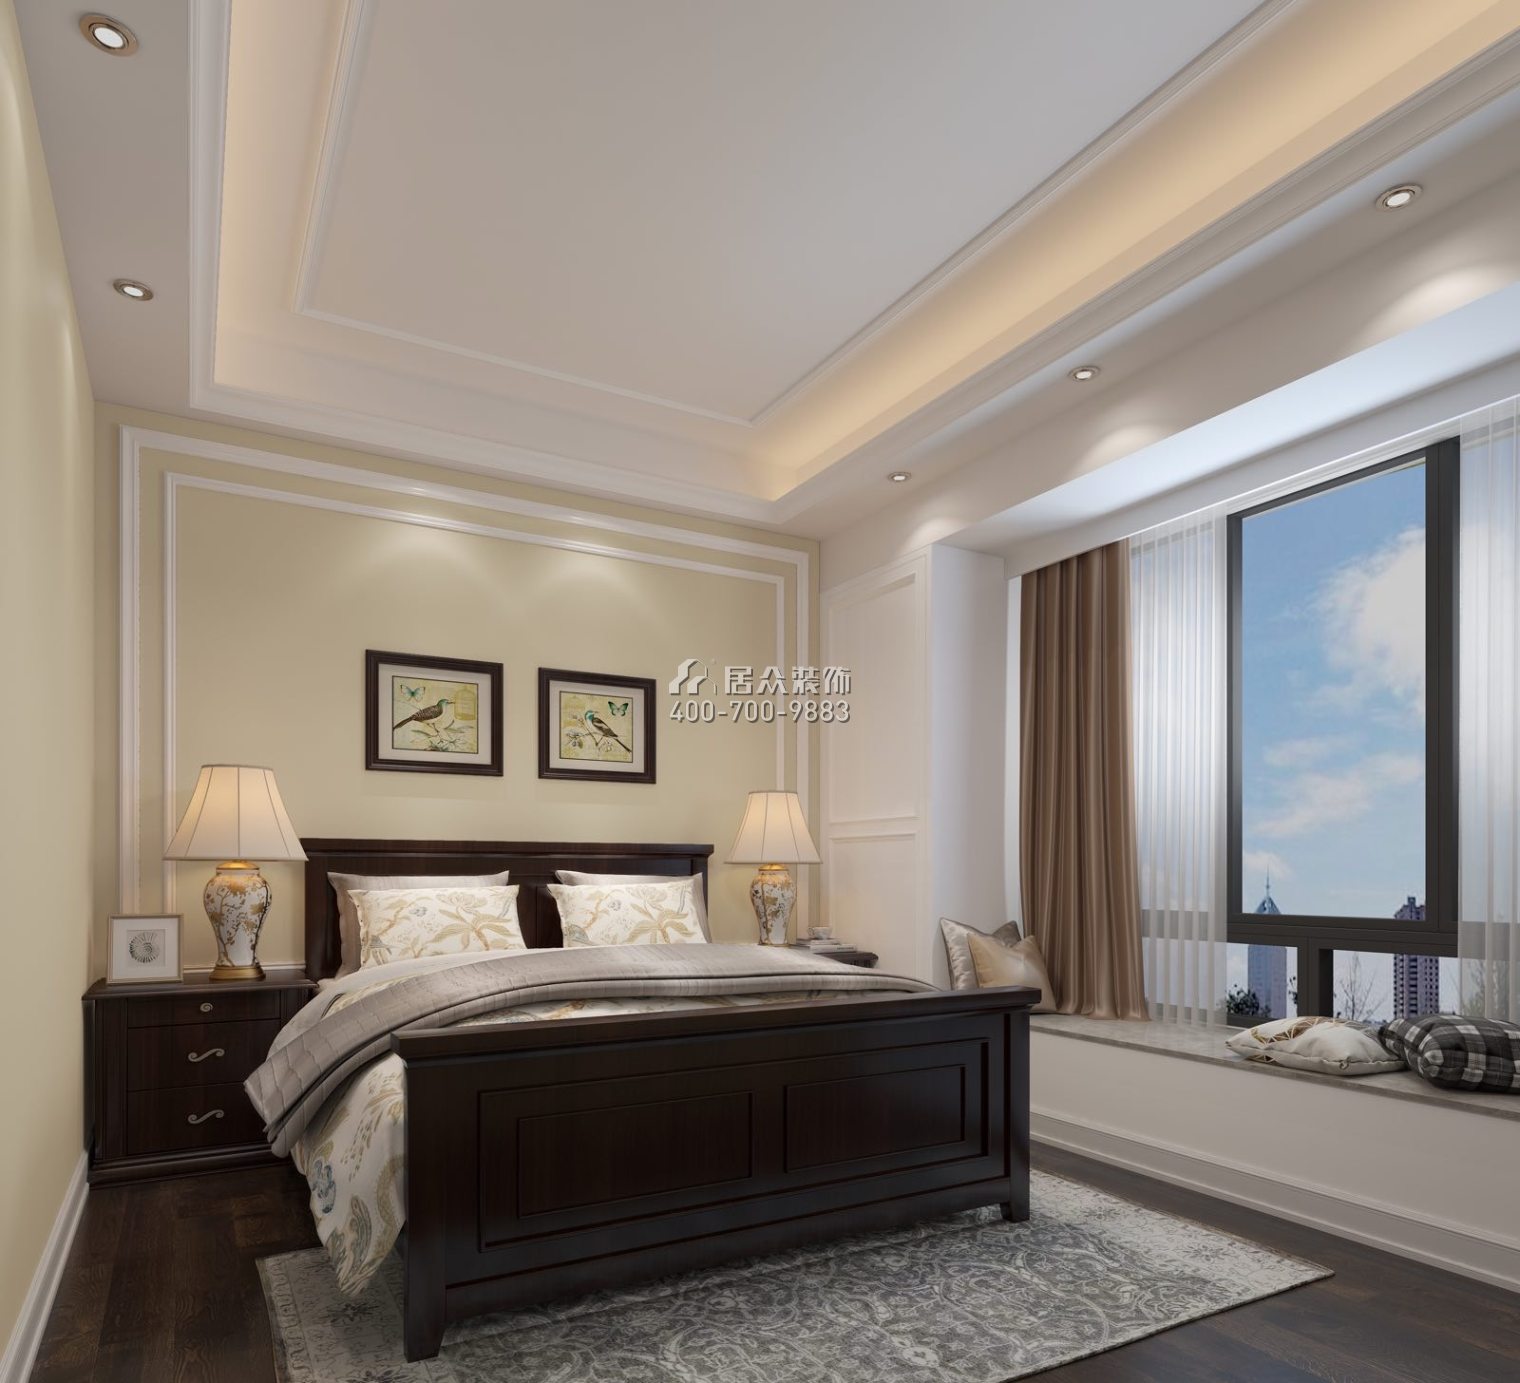 蘭江山第一期190平方米歐式風格平層戶型臥室裝修效果圖